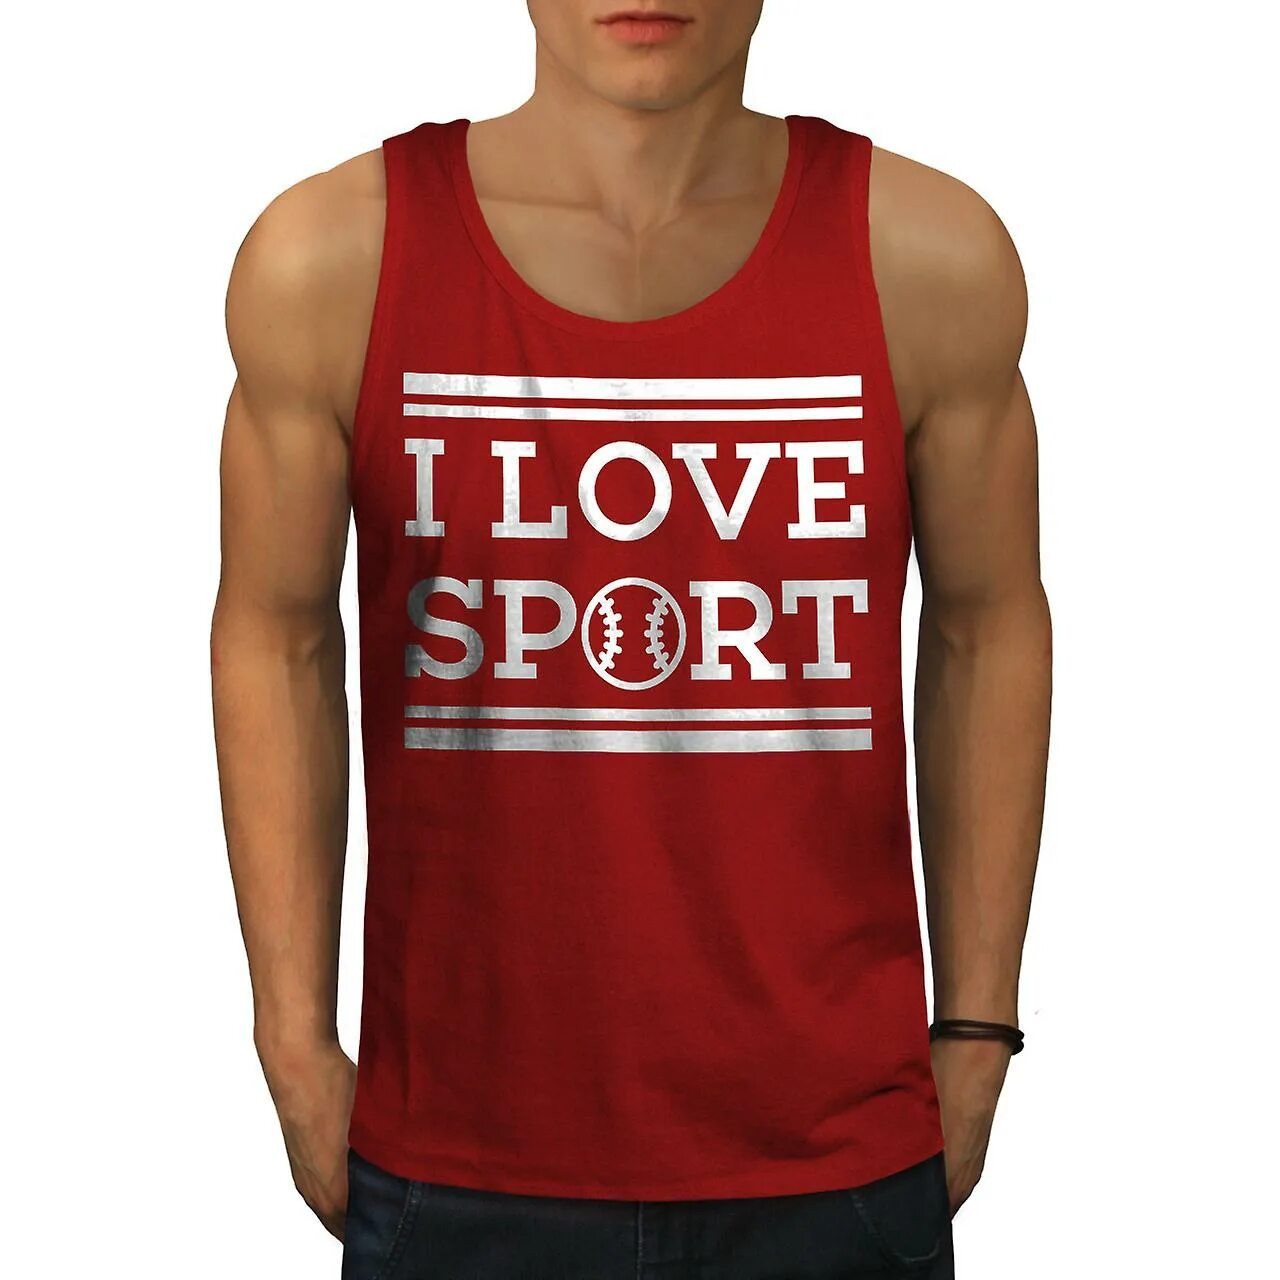 I Love Sport. Sport one Love. I Love Sport картинки.